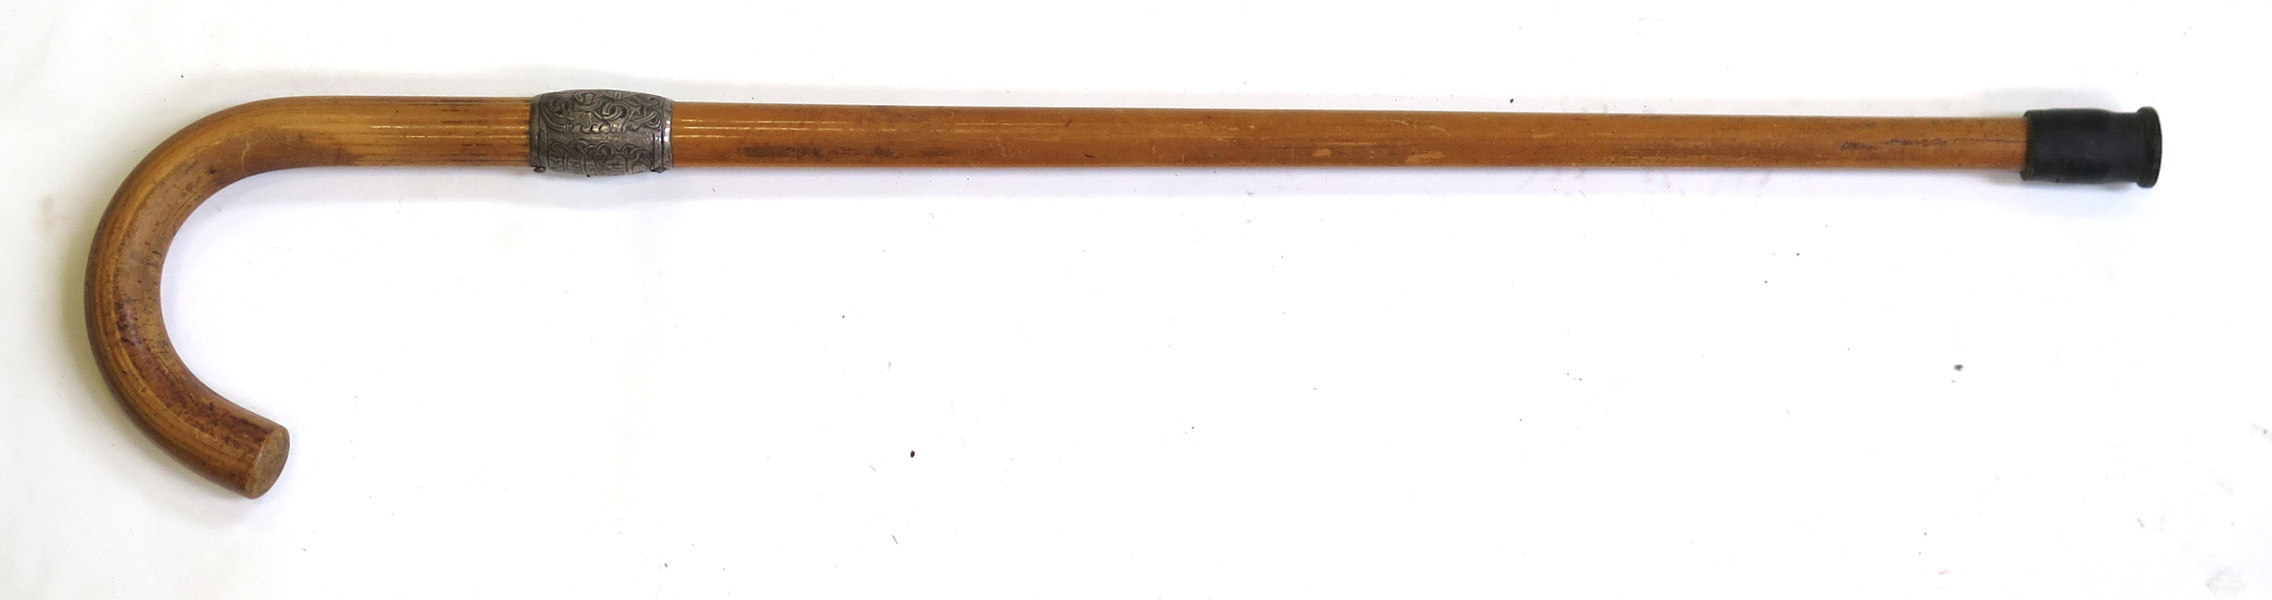 Käpp, bambu med silverbeslag, dekor av runor mm efter original på Jellingestenen,_12261a_lg.jpeg